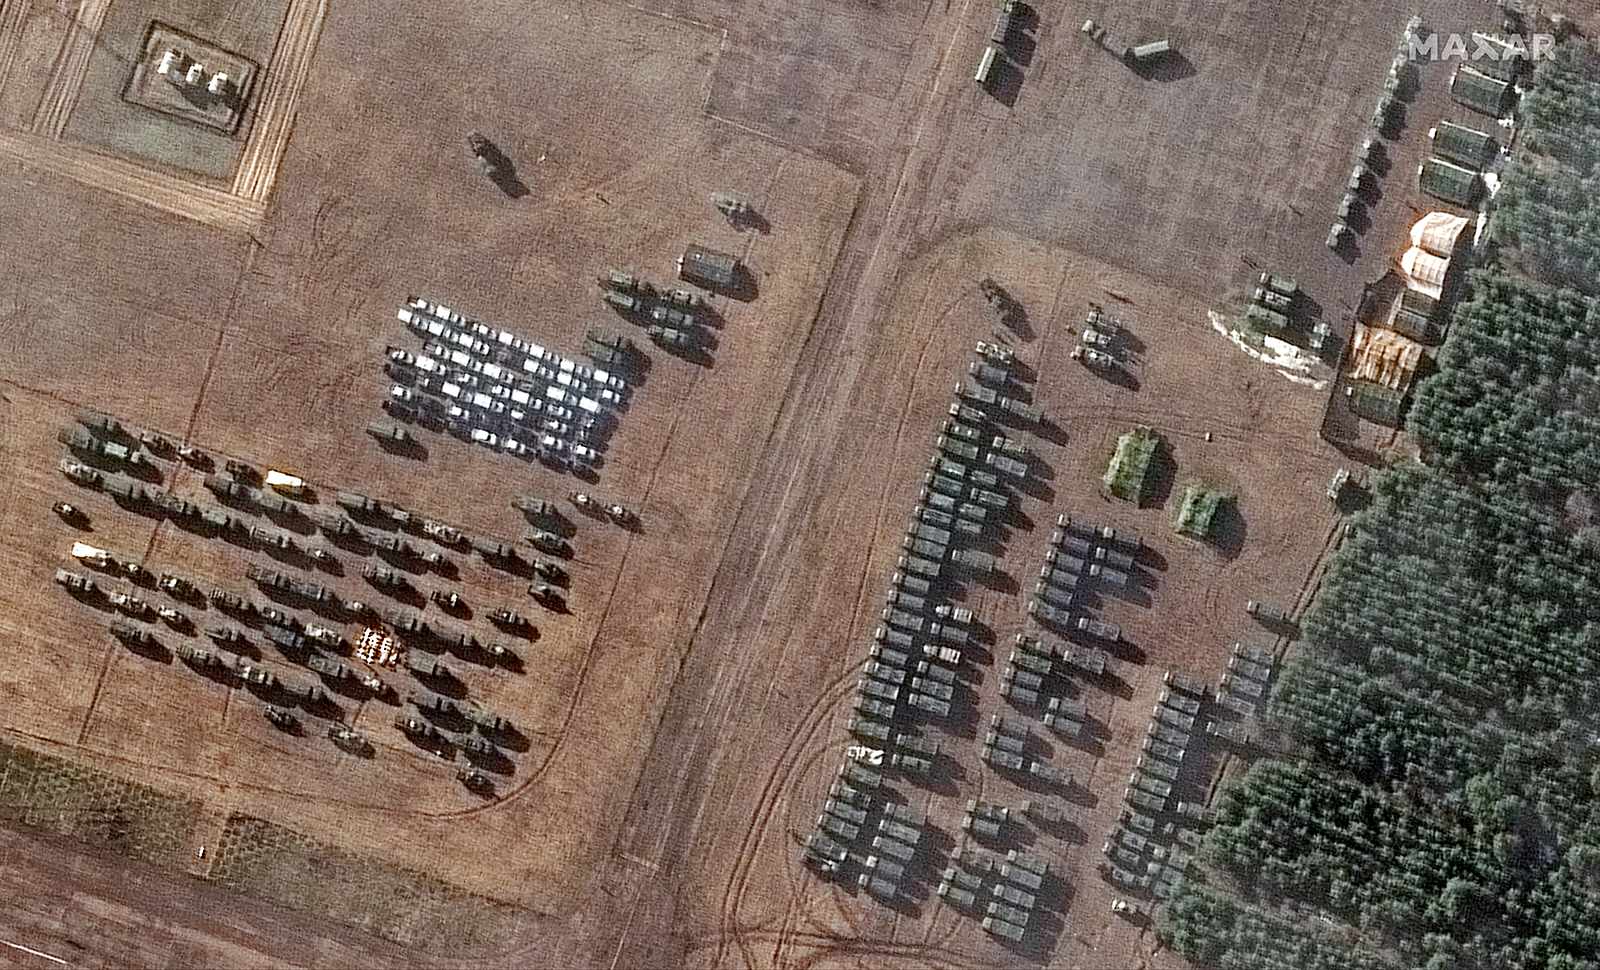 Le immagini satellitari mostrano dozzine di tende e veicoli apparsi nei giorni scorsi all'aeroporto a sud-ovest di Masir, nel sud della Bielorussia.